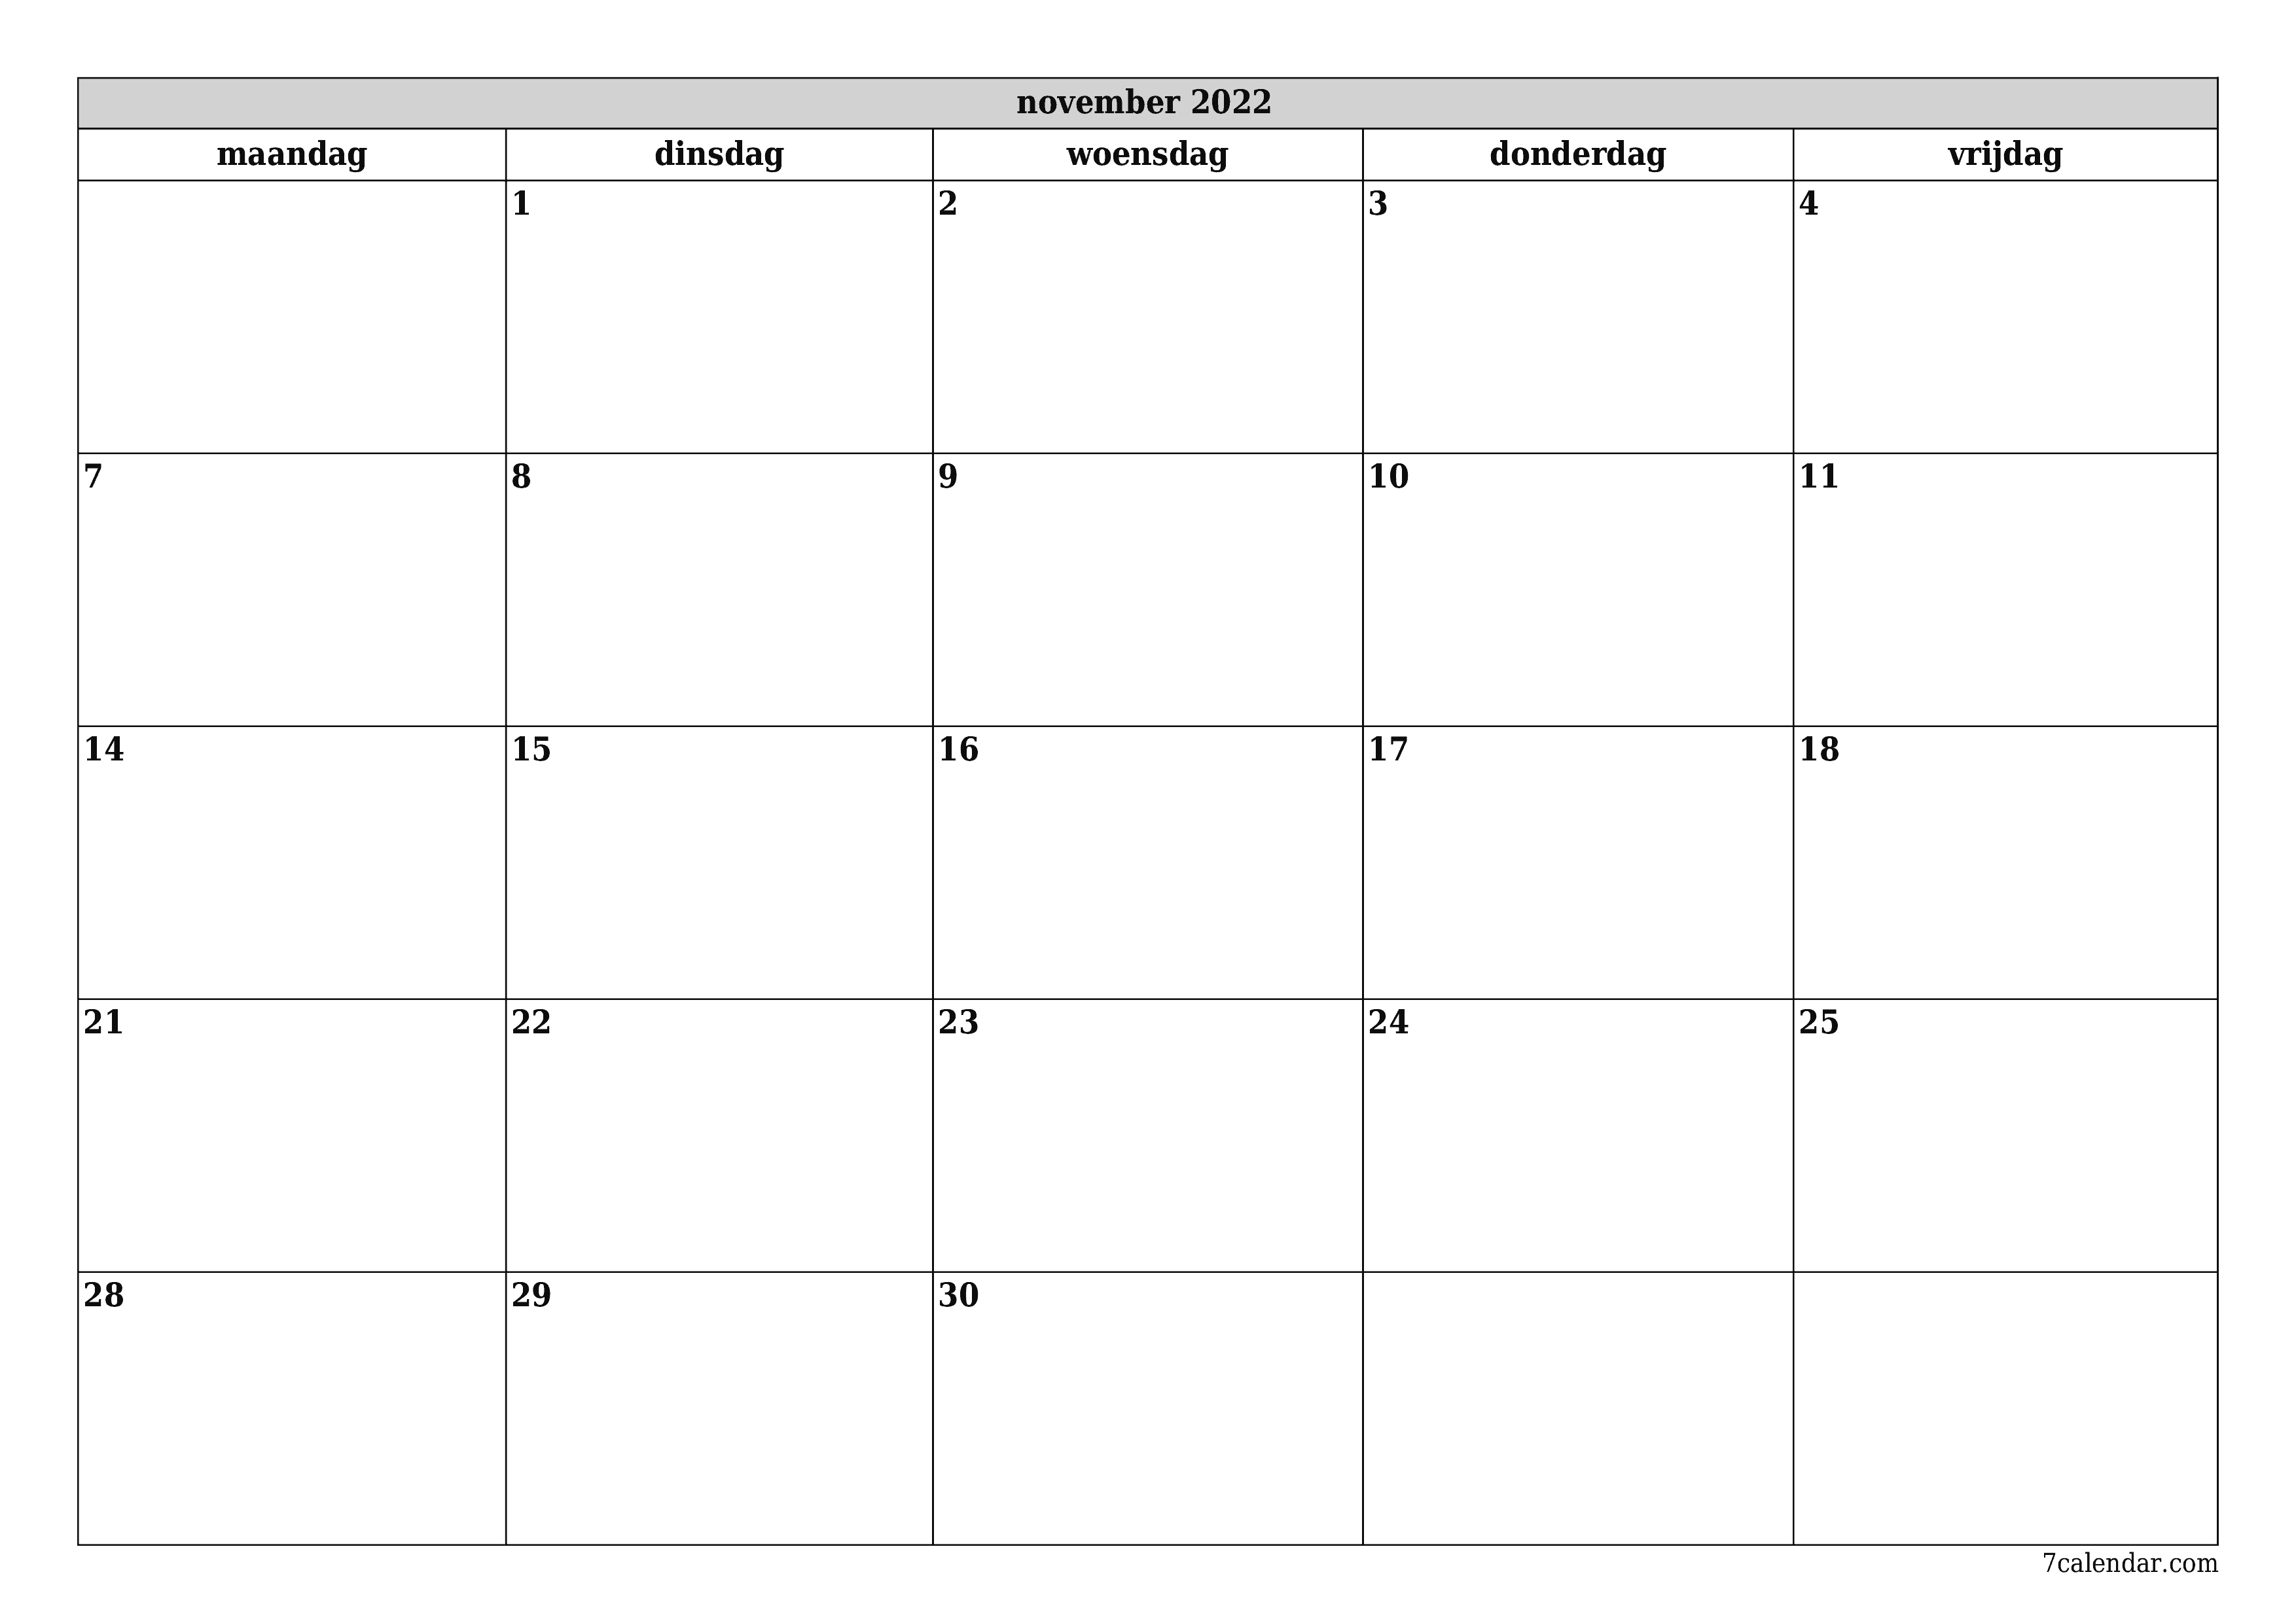 Lege maandplanner voor maand november 2022 met notities, opslaan en afdrukken naar pdf PNG Dutch - 7calendar.com